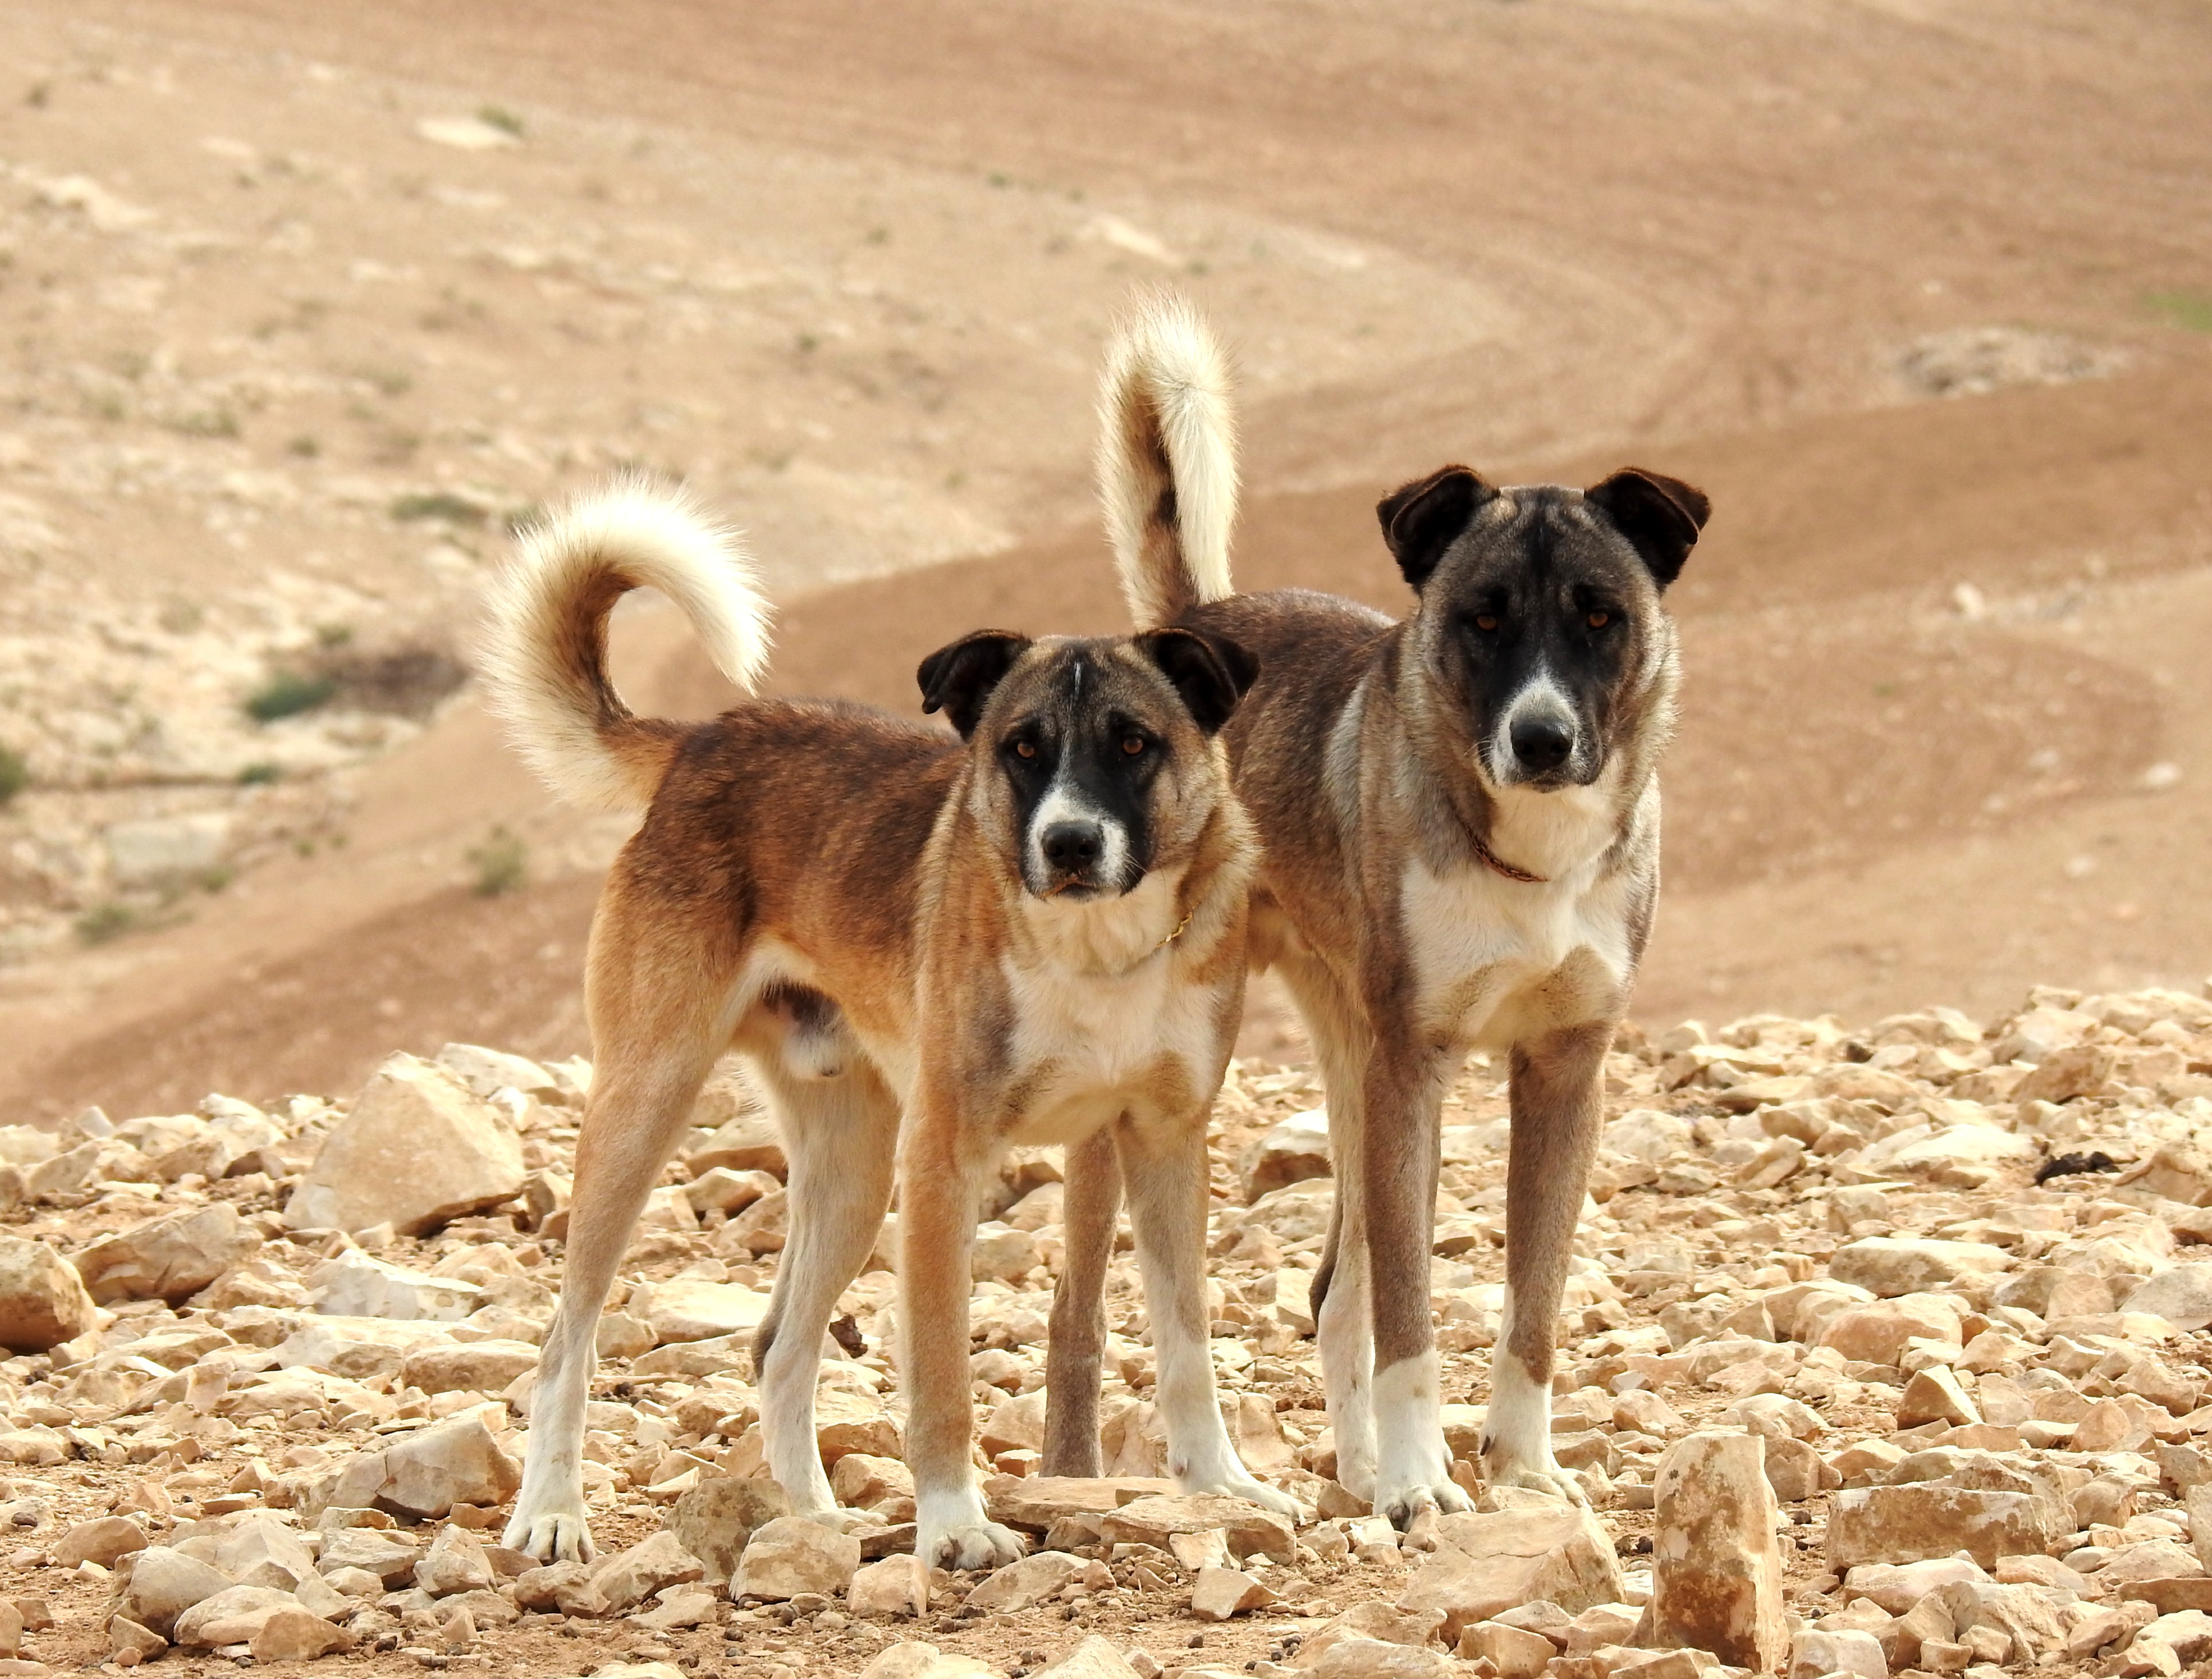 Curious Bedouin hounds